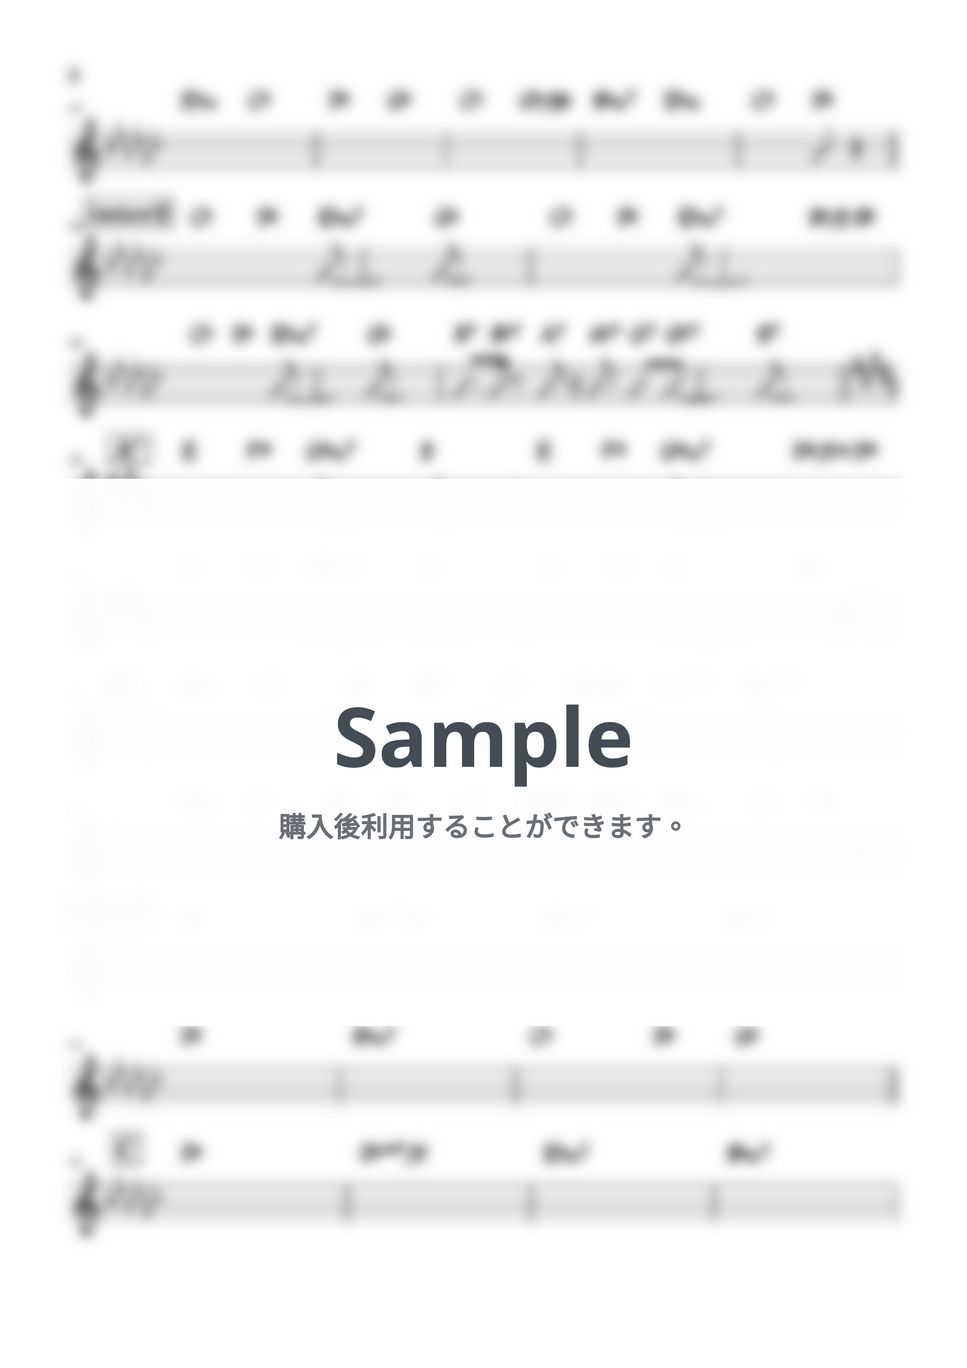 ヨルシカ - 雨とカプチーノ (バンド用コード譜) by 箱譜屋